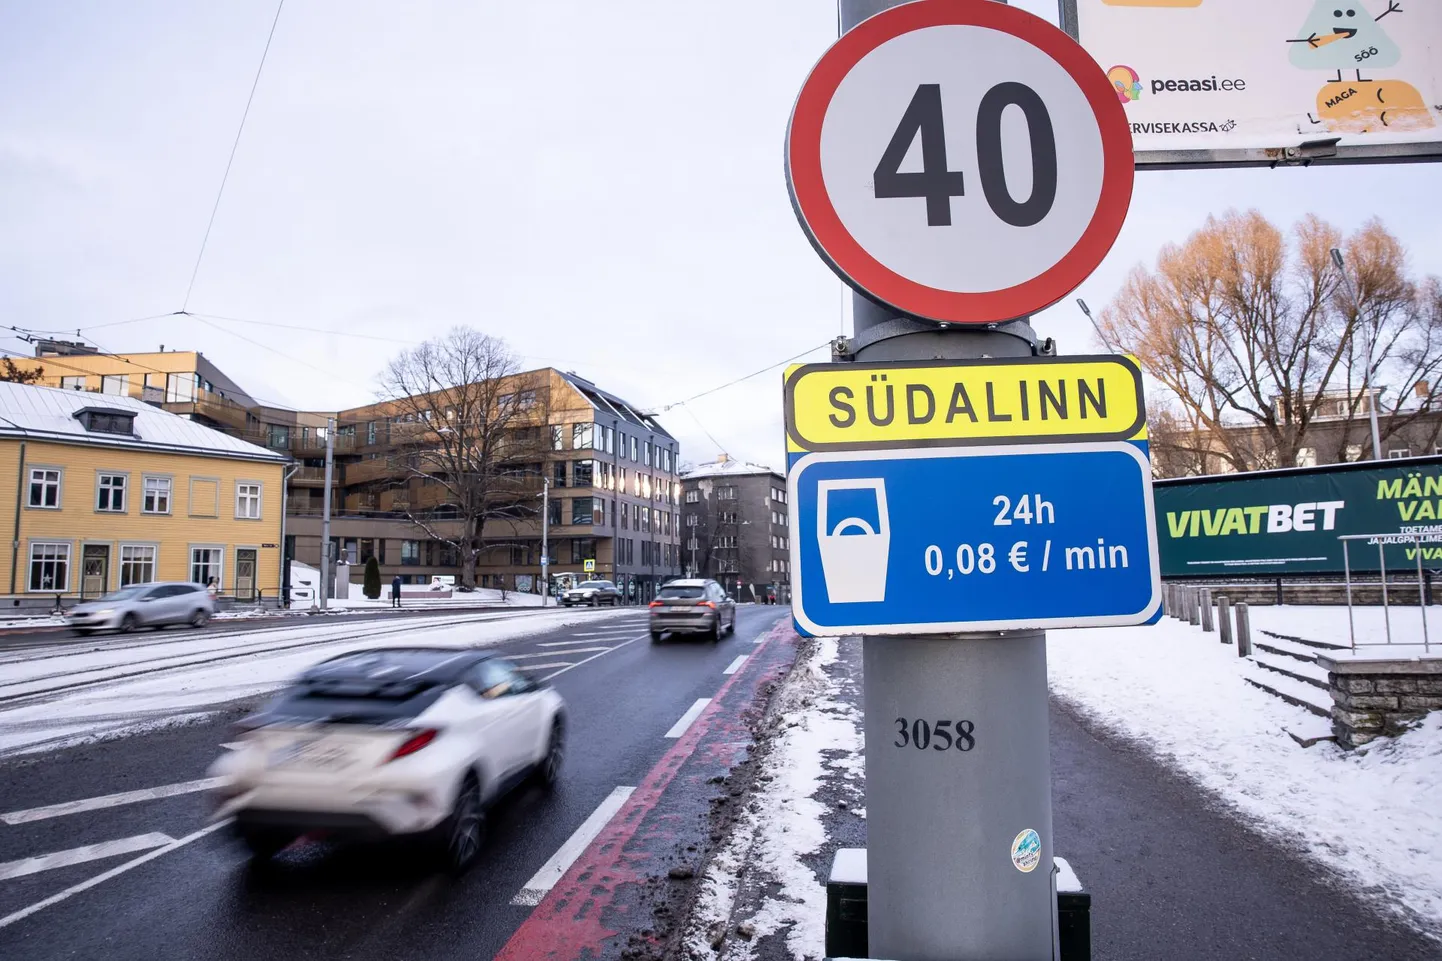 Таллинн обосновывает снижение ограничения скорости для обеспечения безопасности пешеходов.